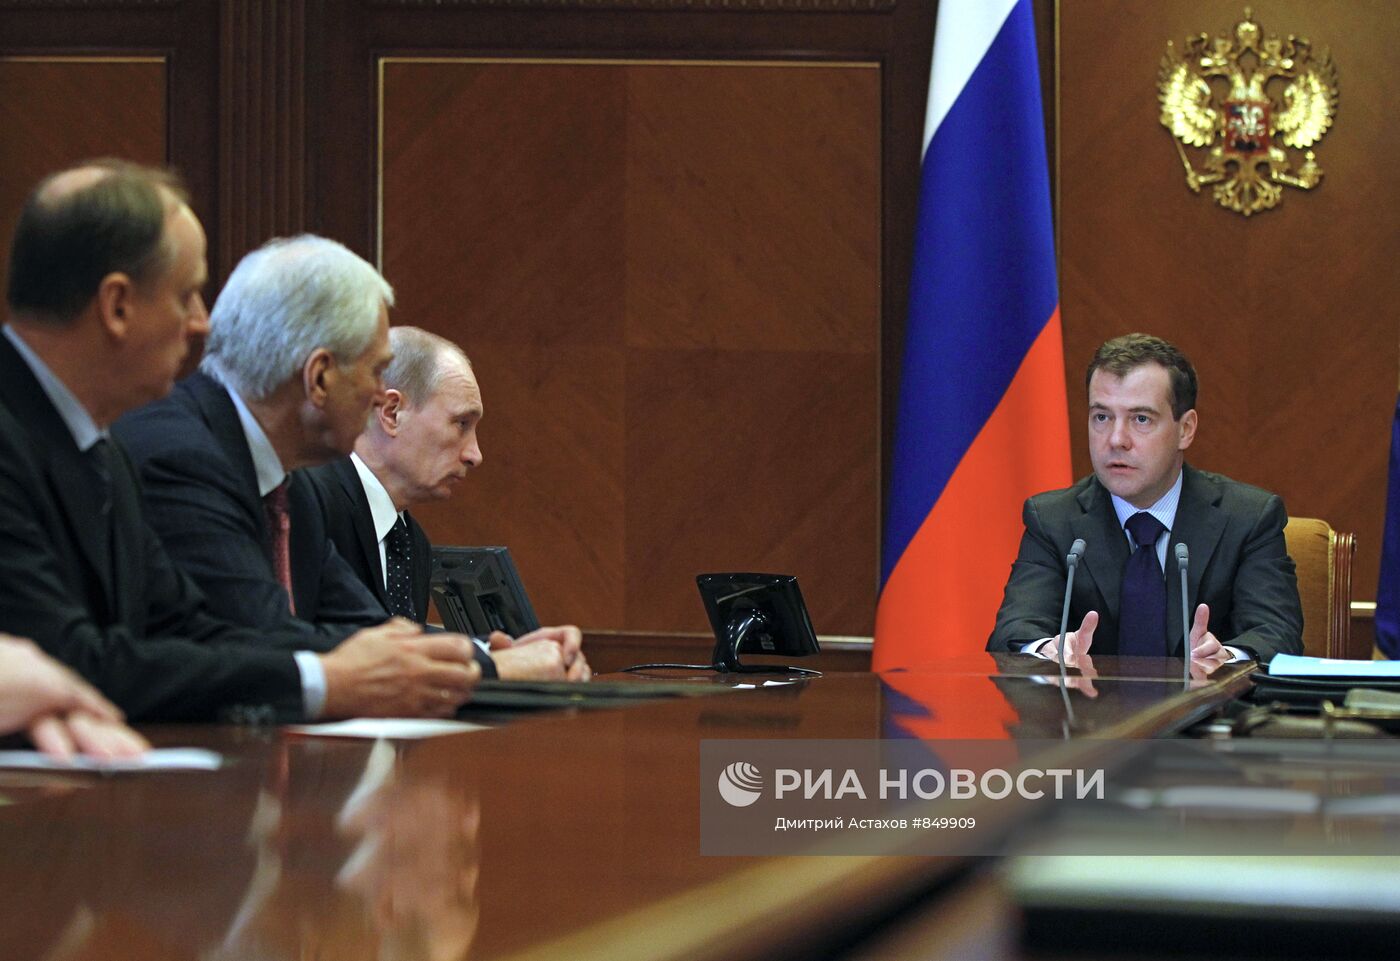 Д.Медведев провел заседание Совбеза РФ 28 января 2011 г.